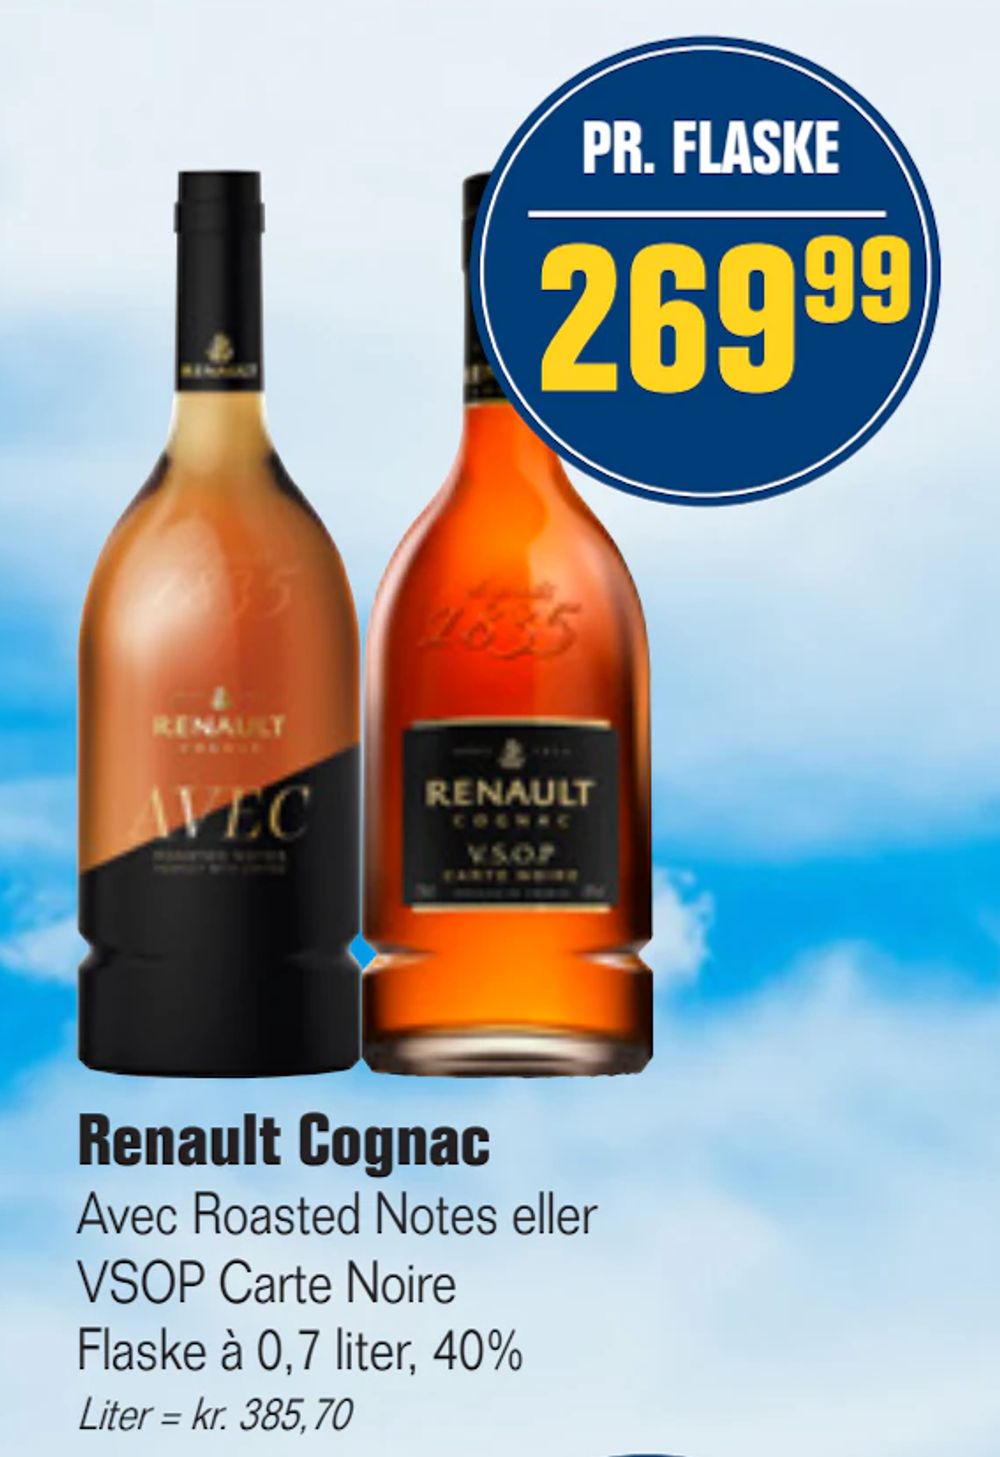 Tilbud på Renault Cognac fra Otto Duborg til 269,99 kr.